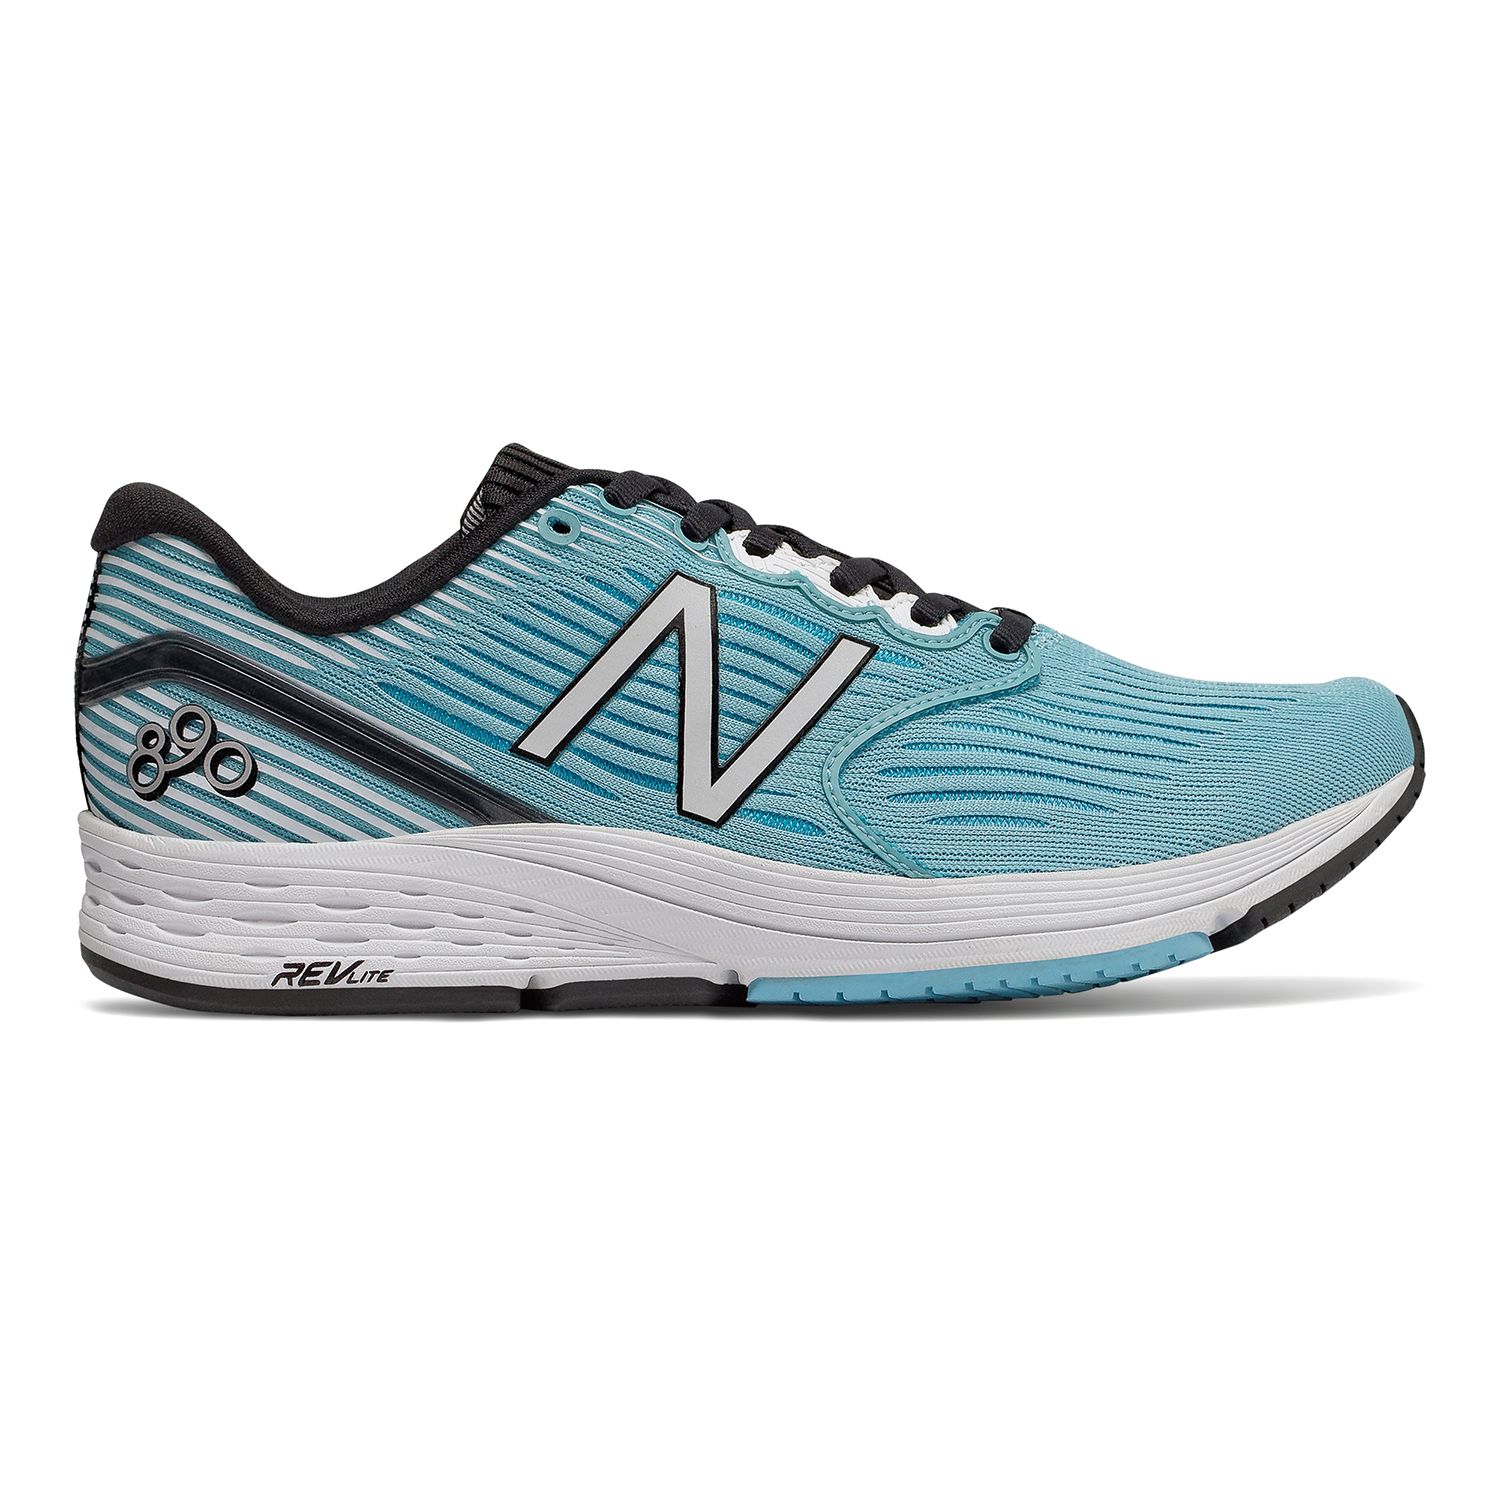 nb 890 running shoe